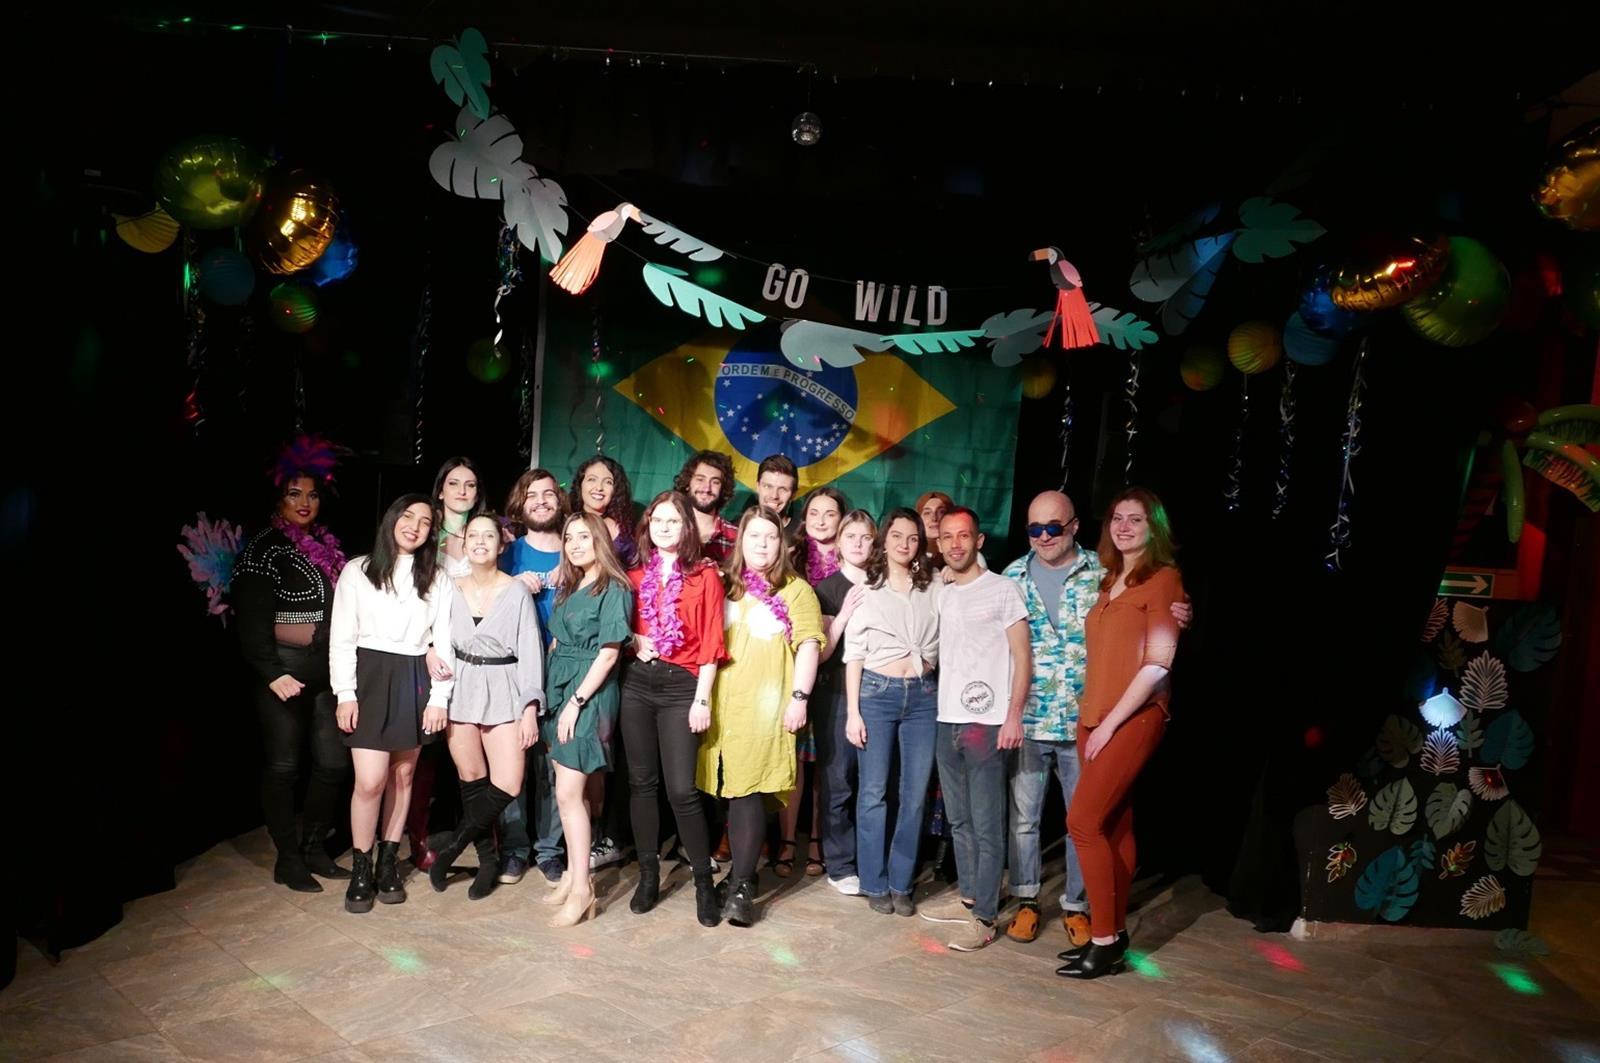 Karnawał w Rio de Janeiro dla studentów międzynarodowych, którzy studiują w słupskiej Uczelni w ramach wymiany studenckiej w programie Erasmus+